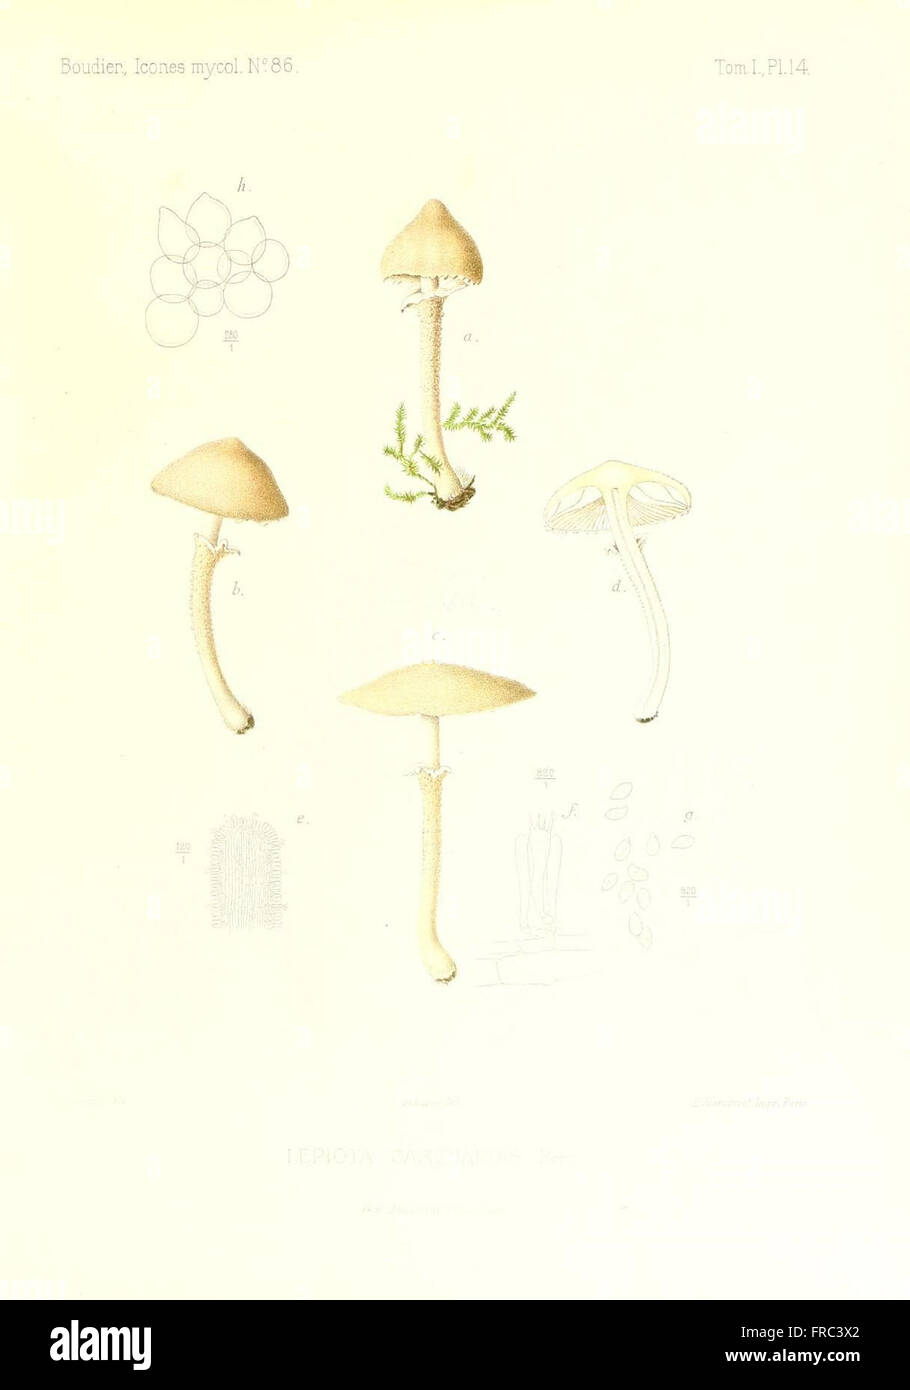 Icones mycologicC3A6, ou Iconographie des champignons de France principalement Discomycetes (Pl. 14) Stock Photo